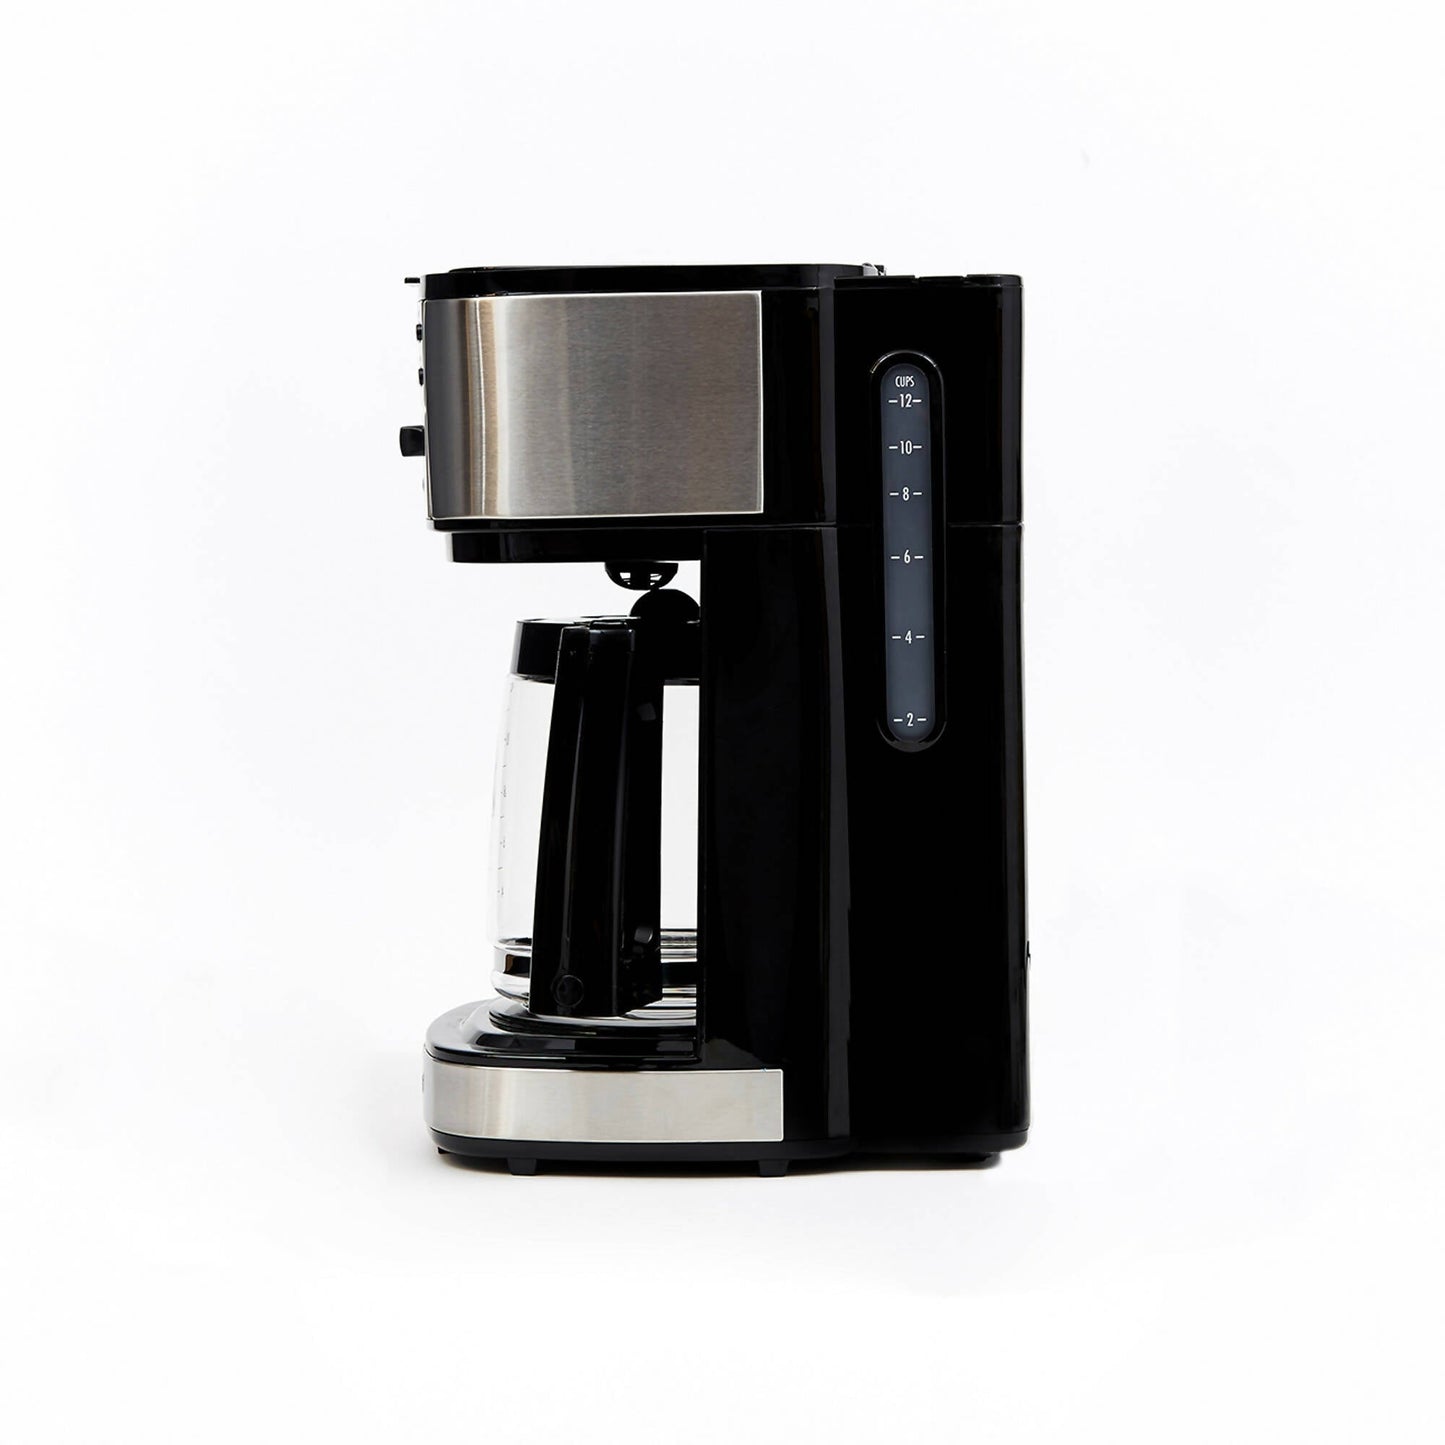 Cafetera Programable 49980-CL Doble Función Espresso + Americana Hamilton Beach10#Negro